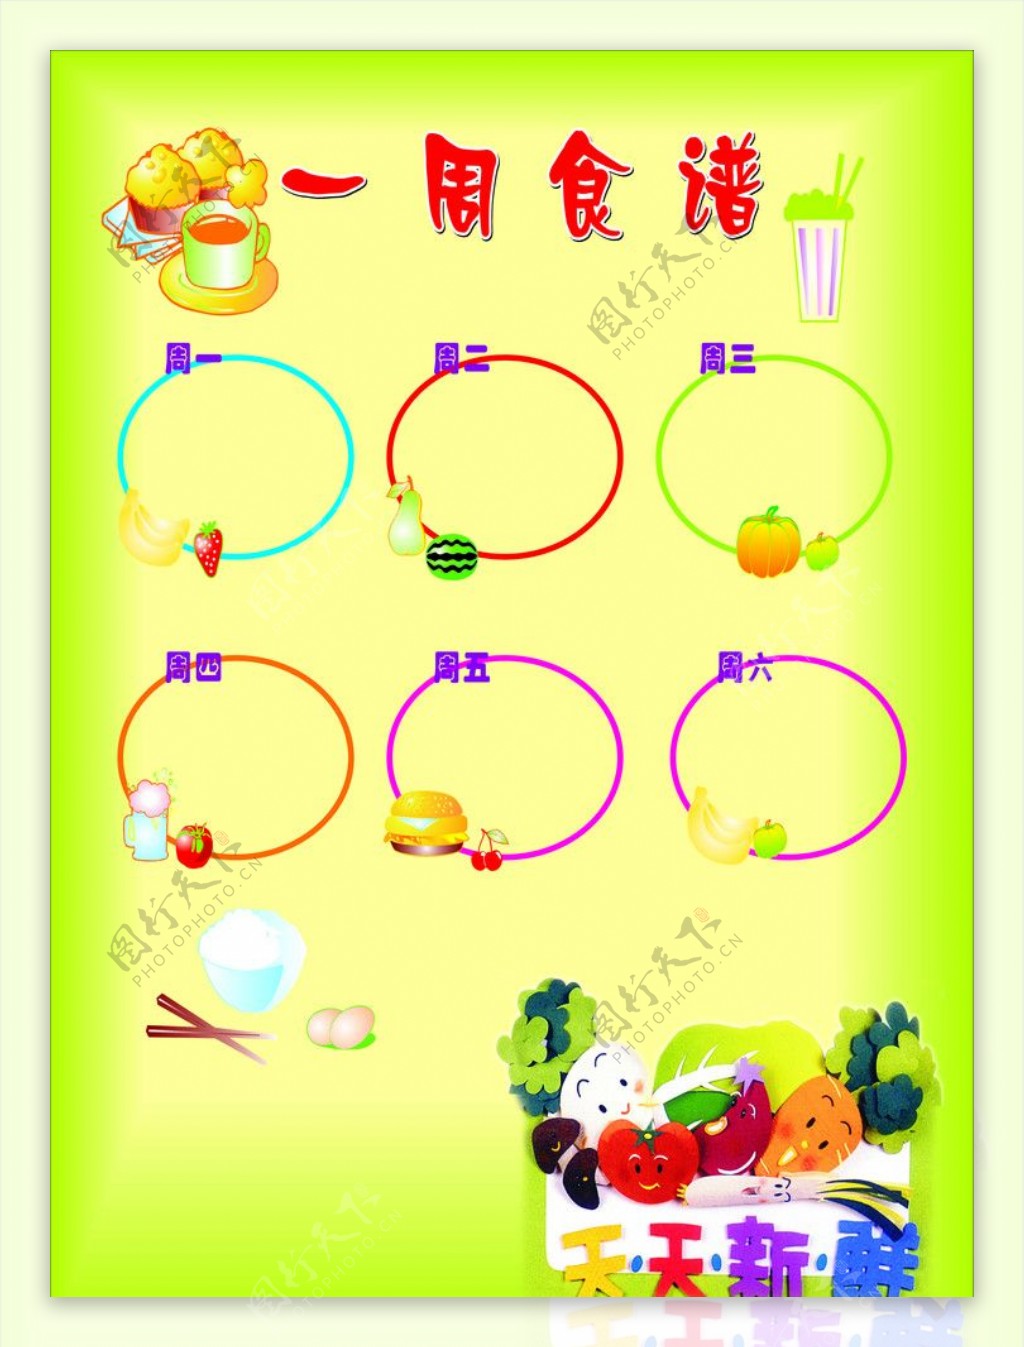 幼儿园食谱栏展板图片下载 - 觅知网